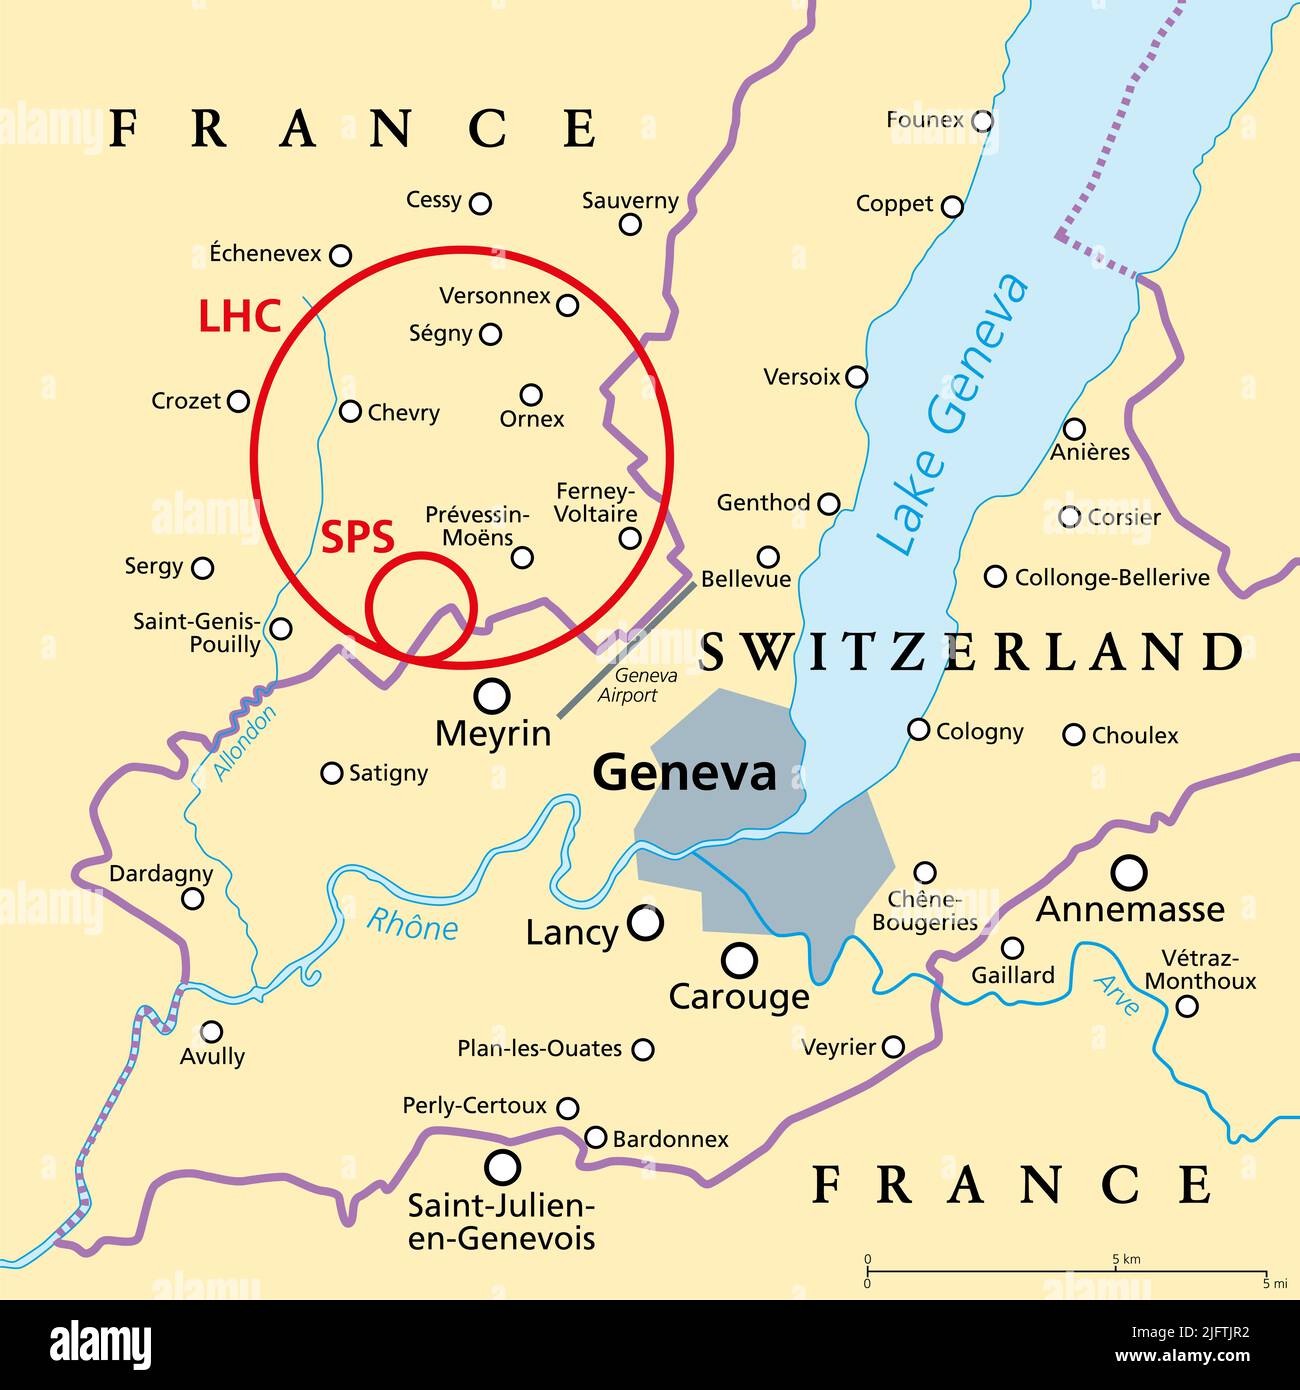 Large Hadron Collider (LHC) und Super Proton Synchrotron (SPS), politische Karte. Weltgrößter Partikelkollider in der Nähe von Genf, Schweiz. Stockfoto